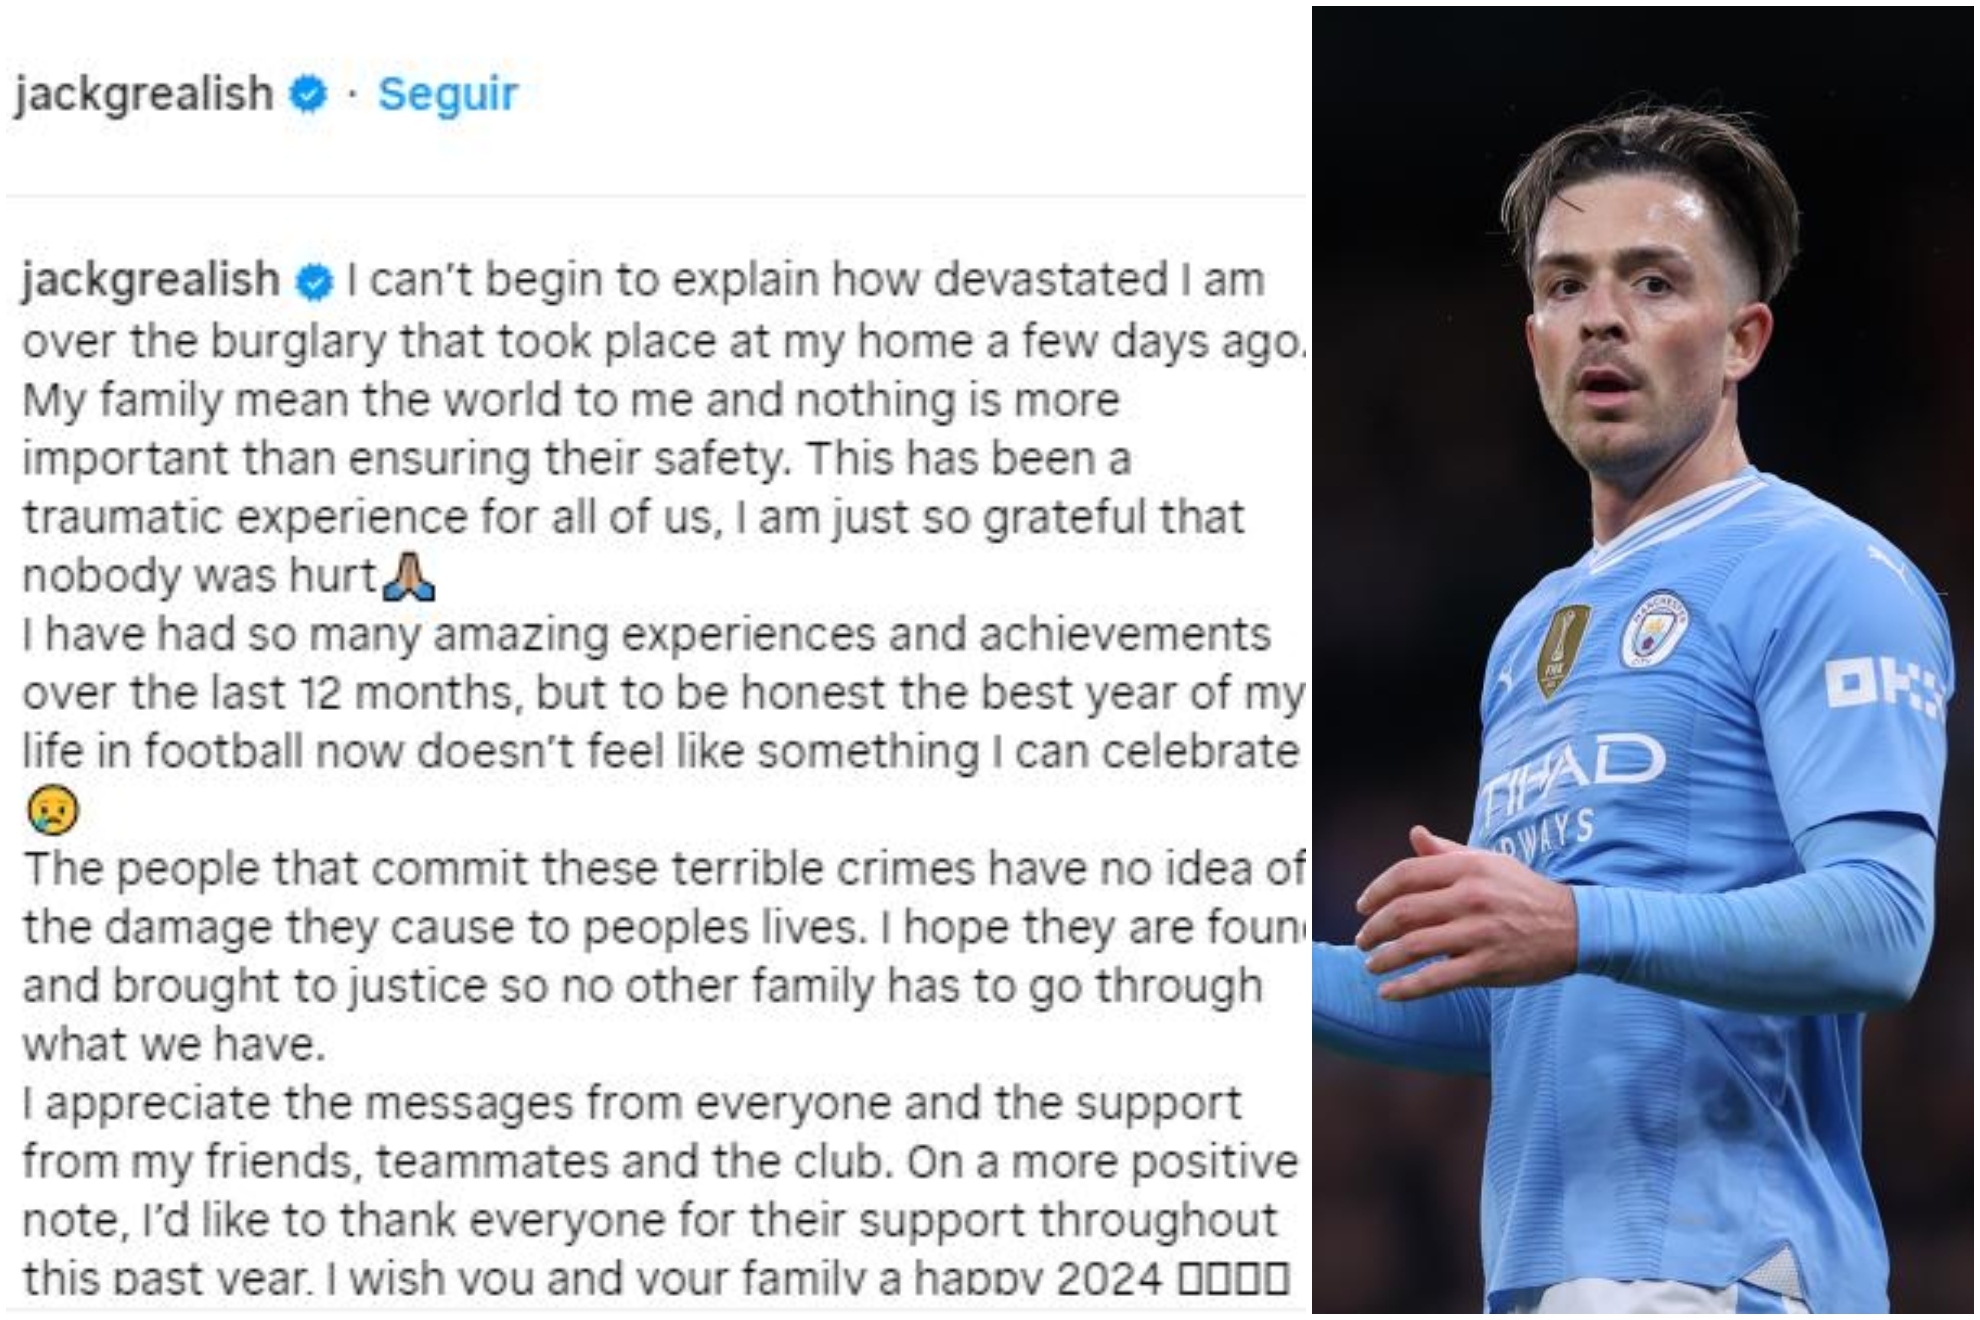 Un montaje con una imagen del mensaje de Grealish en Instagram y otra del jugador del Manchester City.